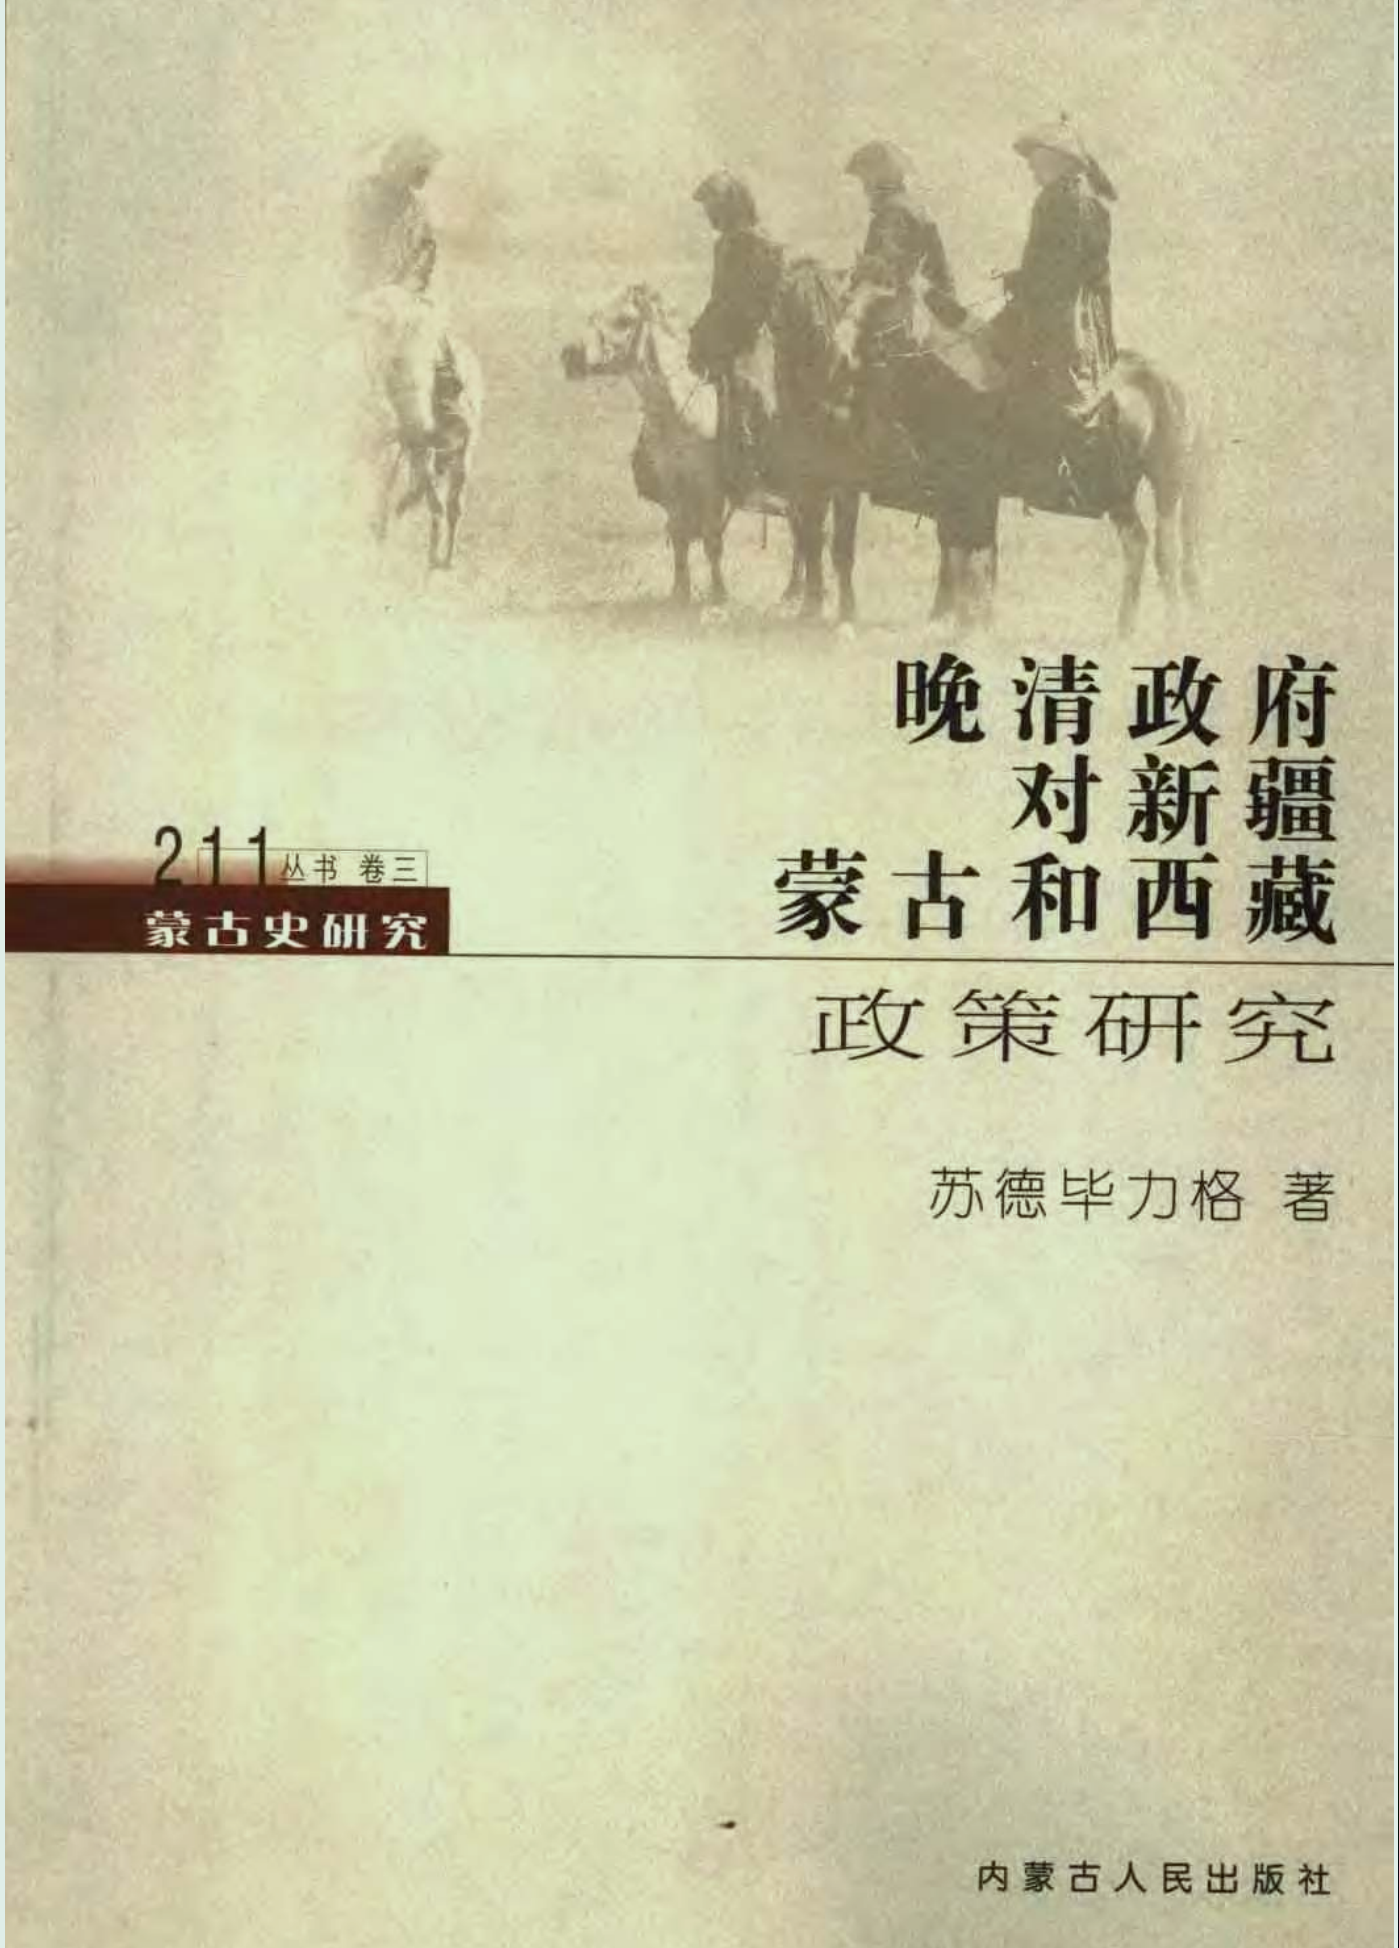 晚清政府对新疆、蒙古和西藏政策研究 苏德毕力格 2005 内蒙古人民出版社 pdf - 爱看电影爱看美剧